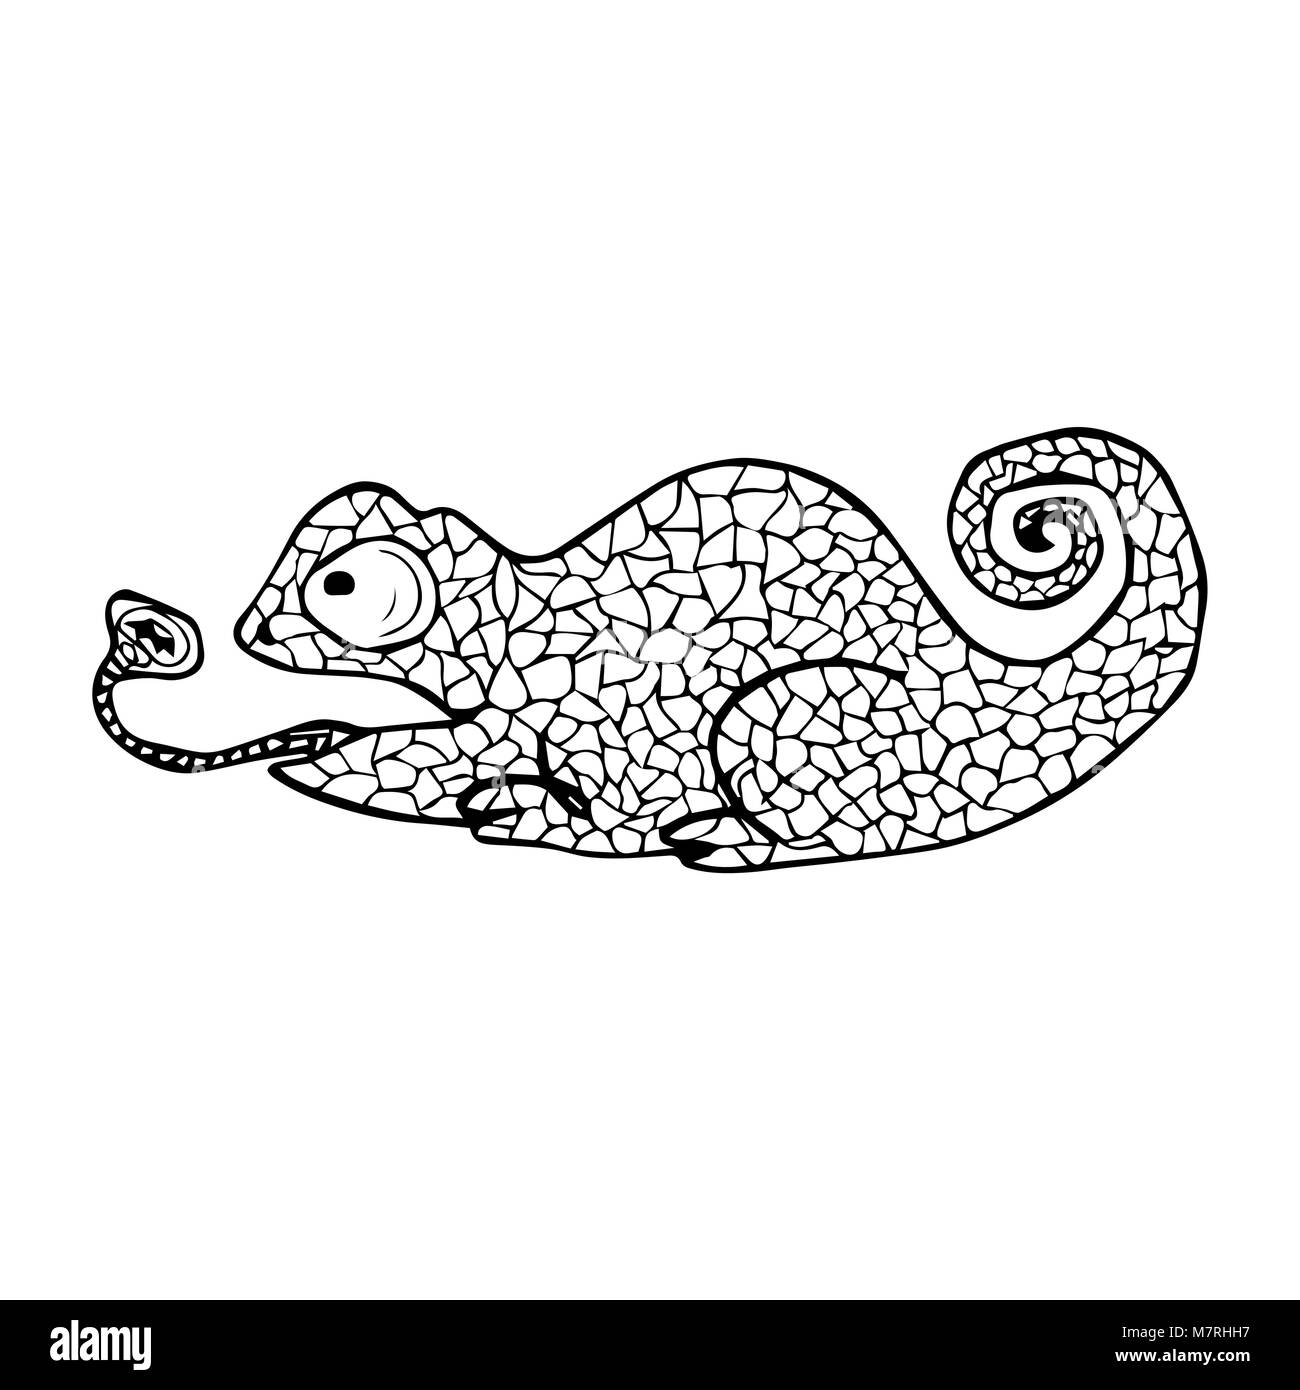 Illustrazione Vettoriale di Chameleon con doodle pattern. Pagina di colorazione - zendala, design per il relax per gli adulti Illustrazione Vettoriale